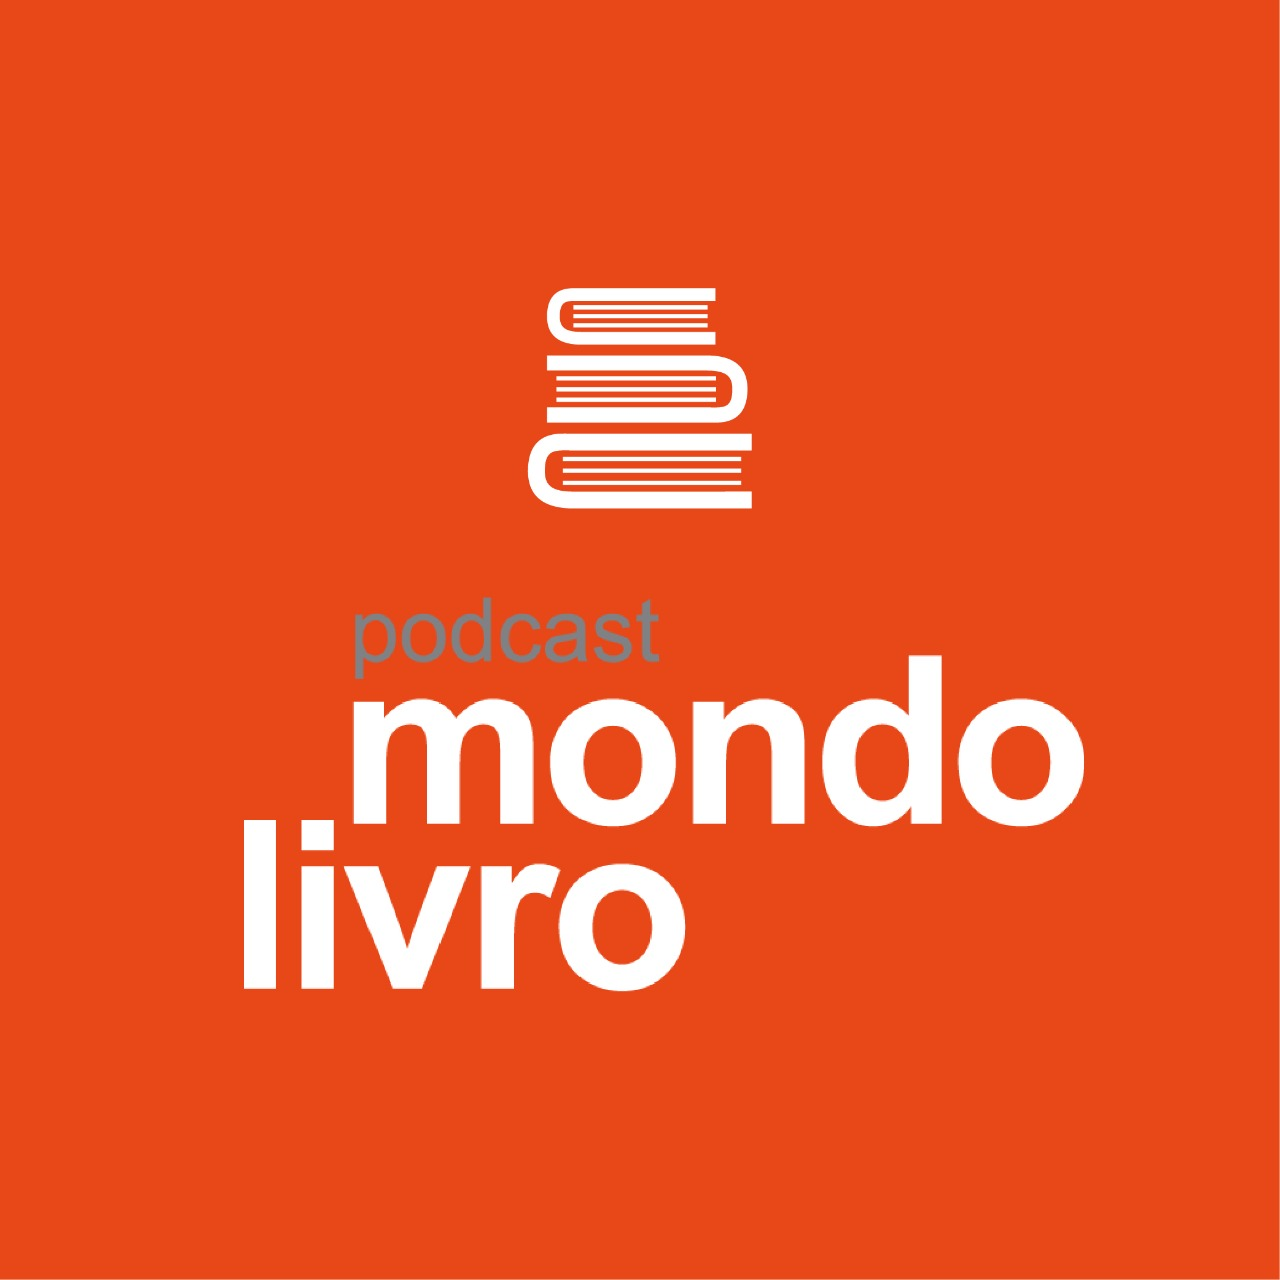 Mondolivro Podcast - Um podcast com o escritor e tradutor Jacyntho Lins Brandão